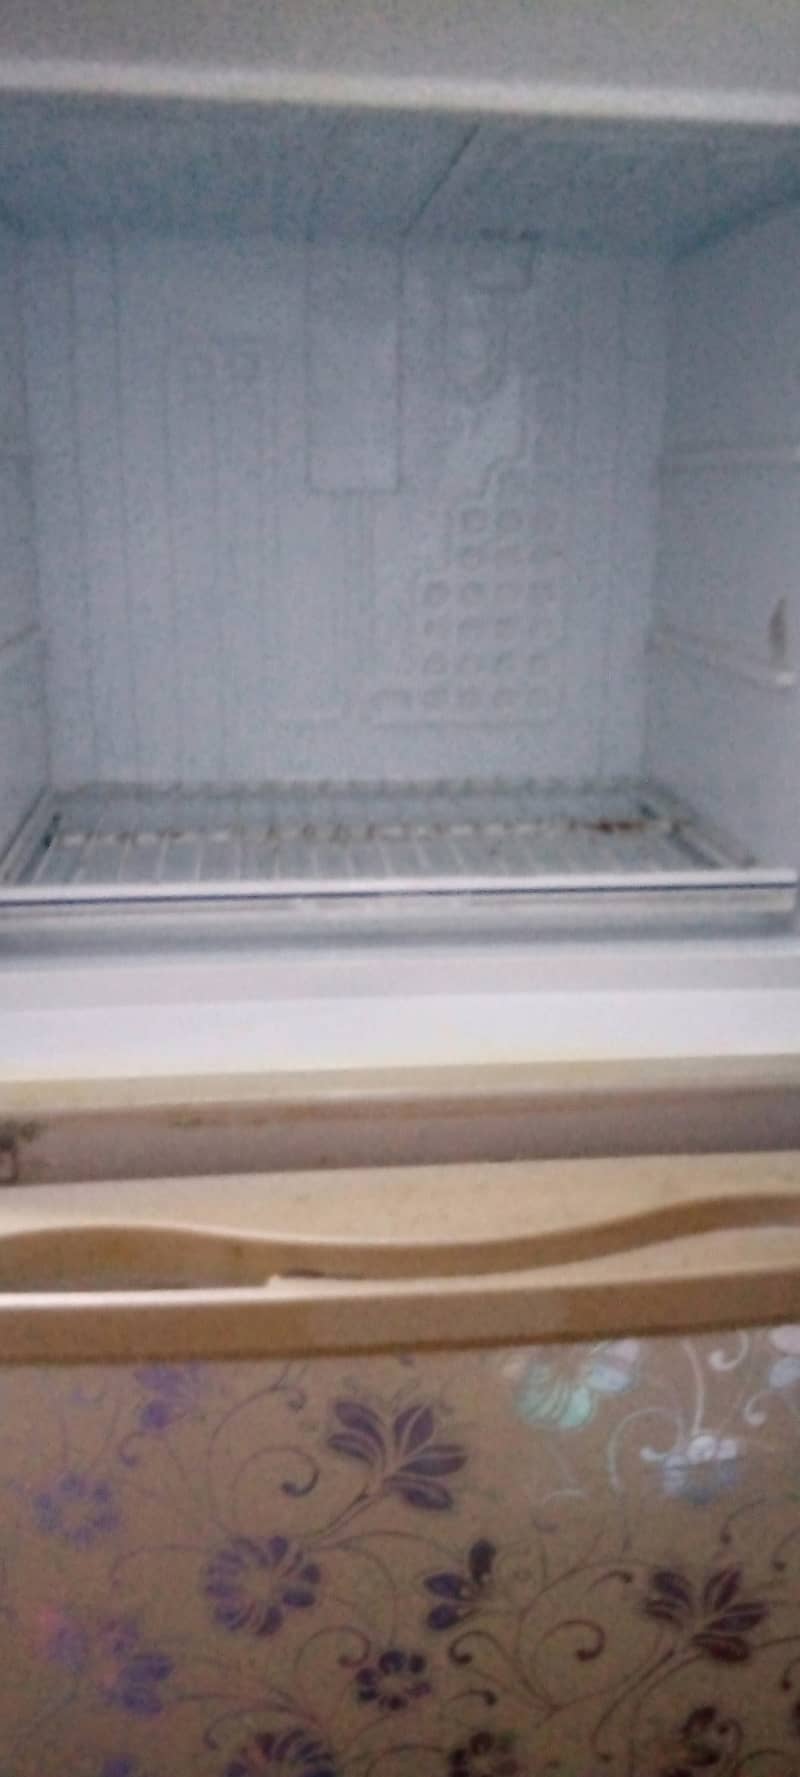 Dawlence fridge 6